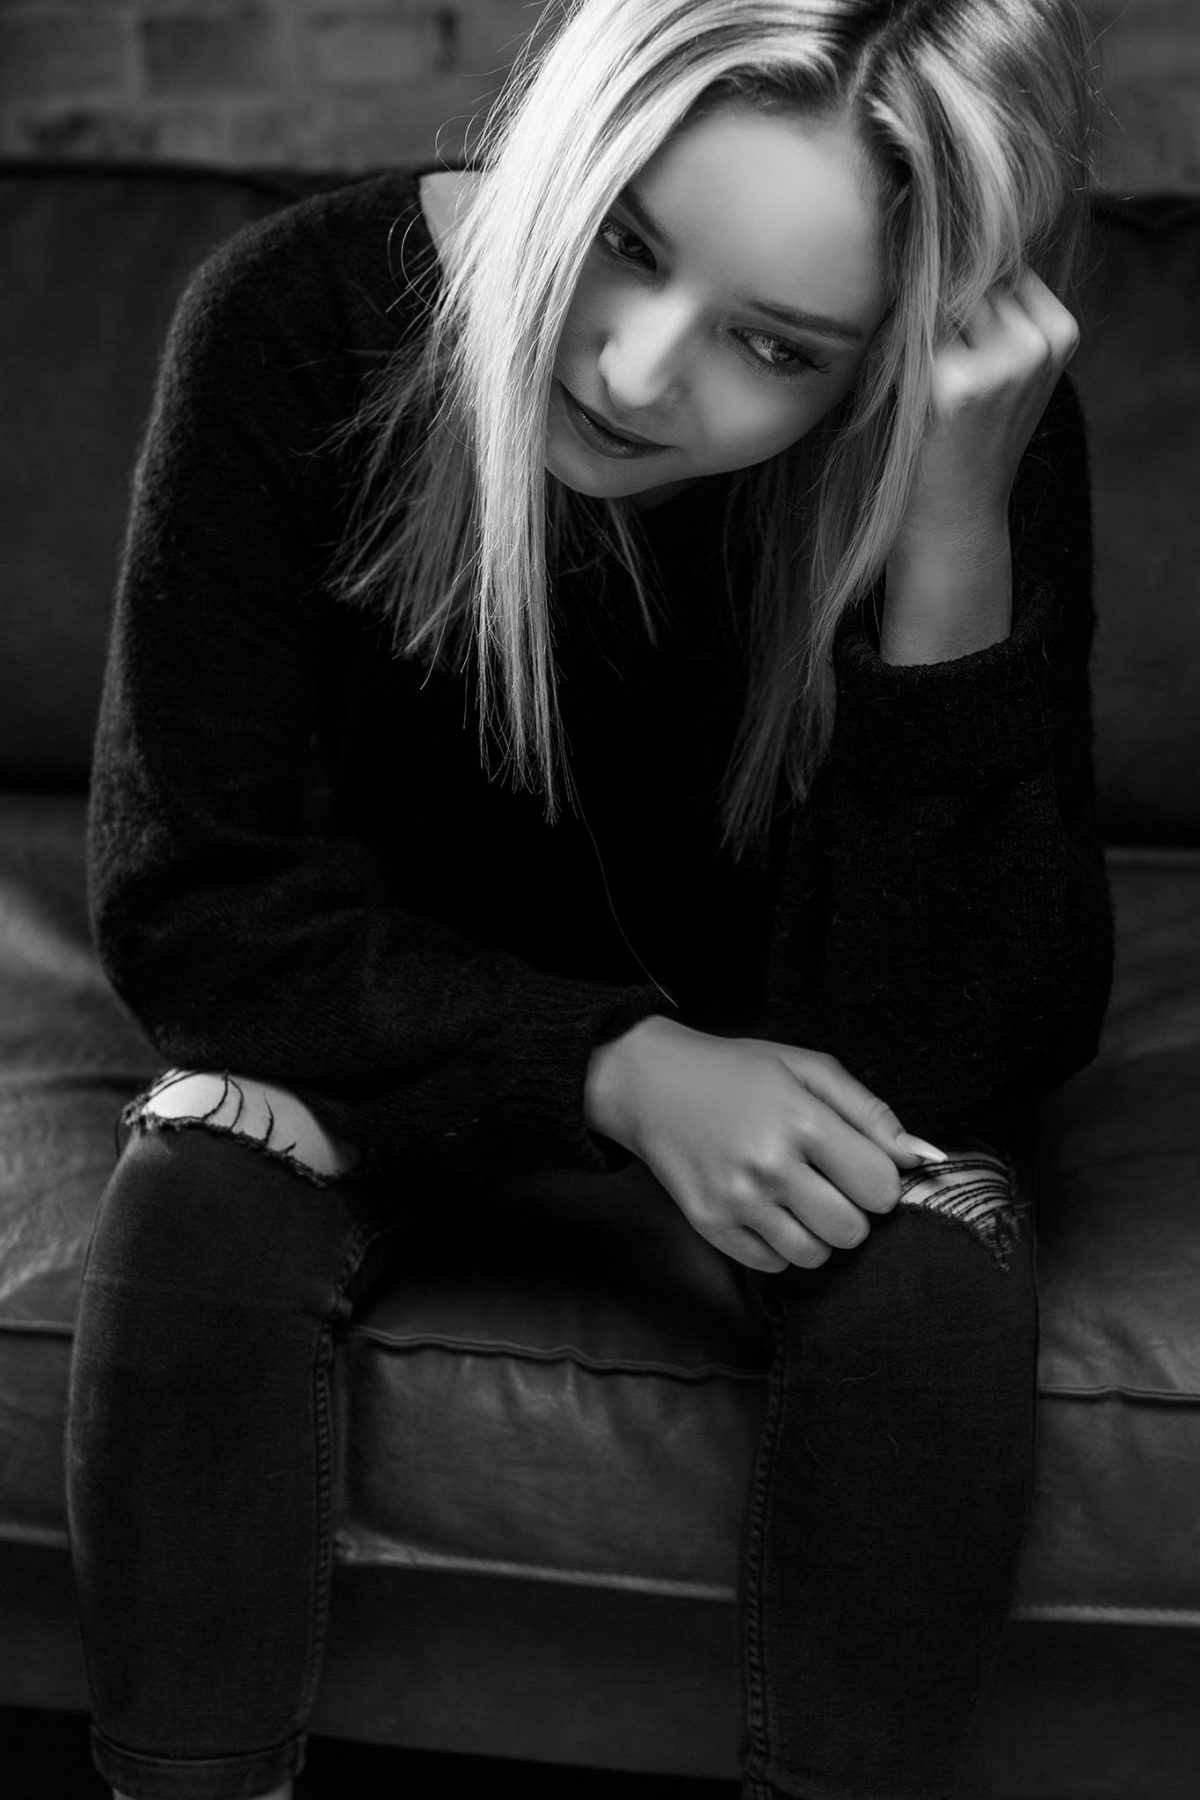 Schwarzweiss Fotografie einer blonden, jungen Dame in Schwarz gekleidet